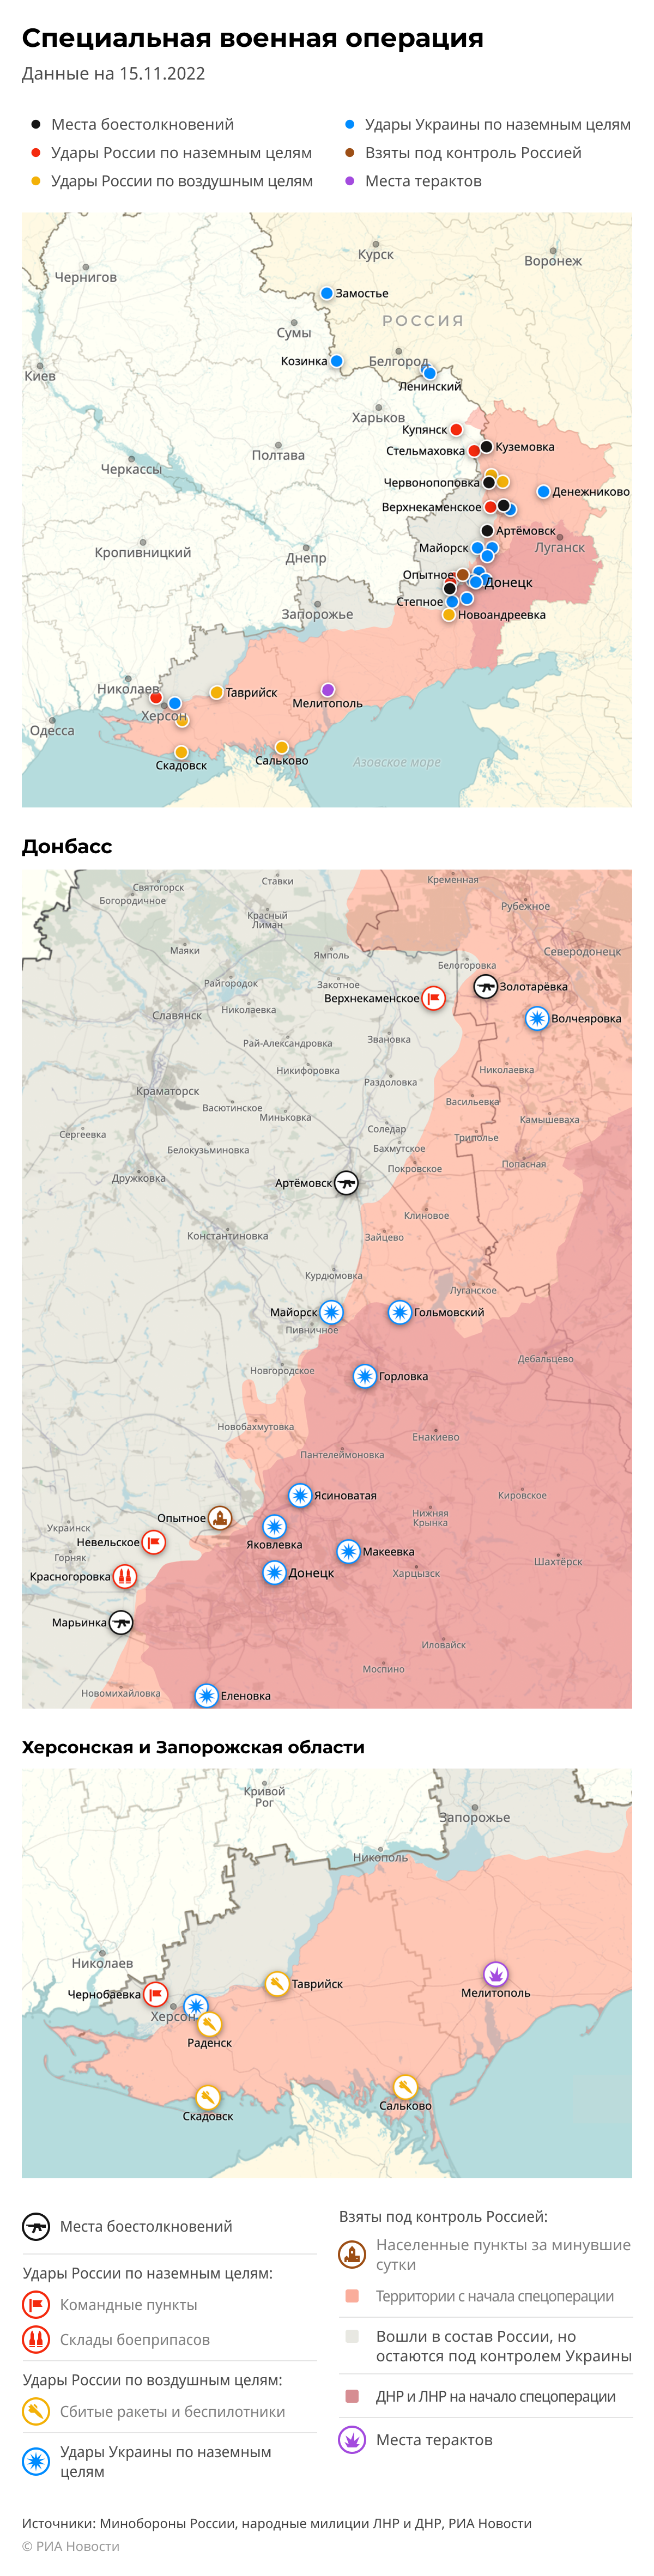 Карта спецоперации Вооруженных сил России на Украине на 15.11.2022